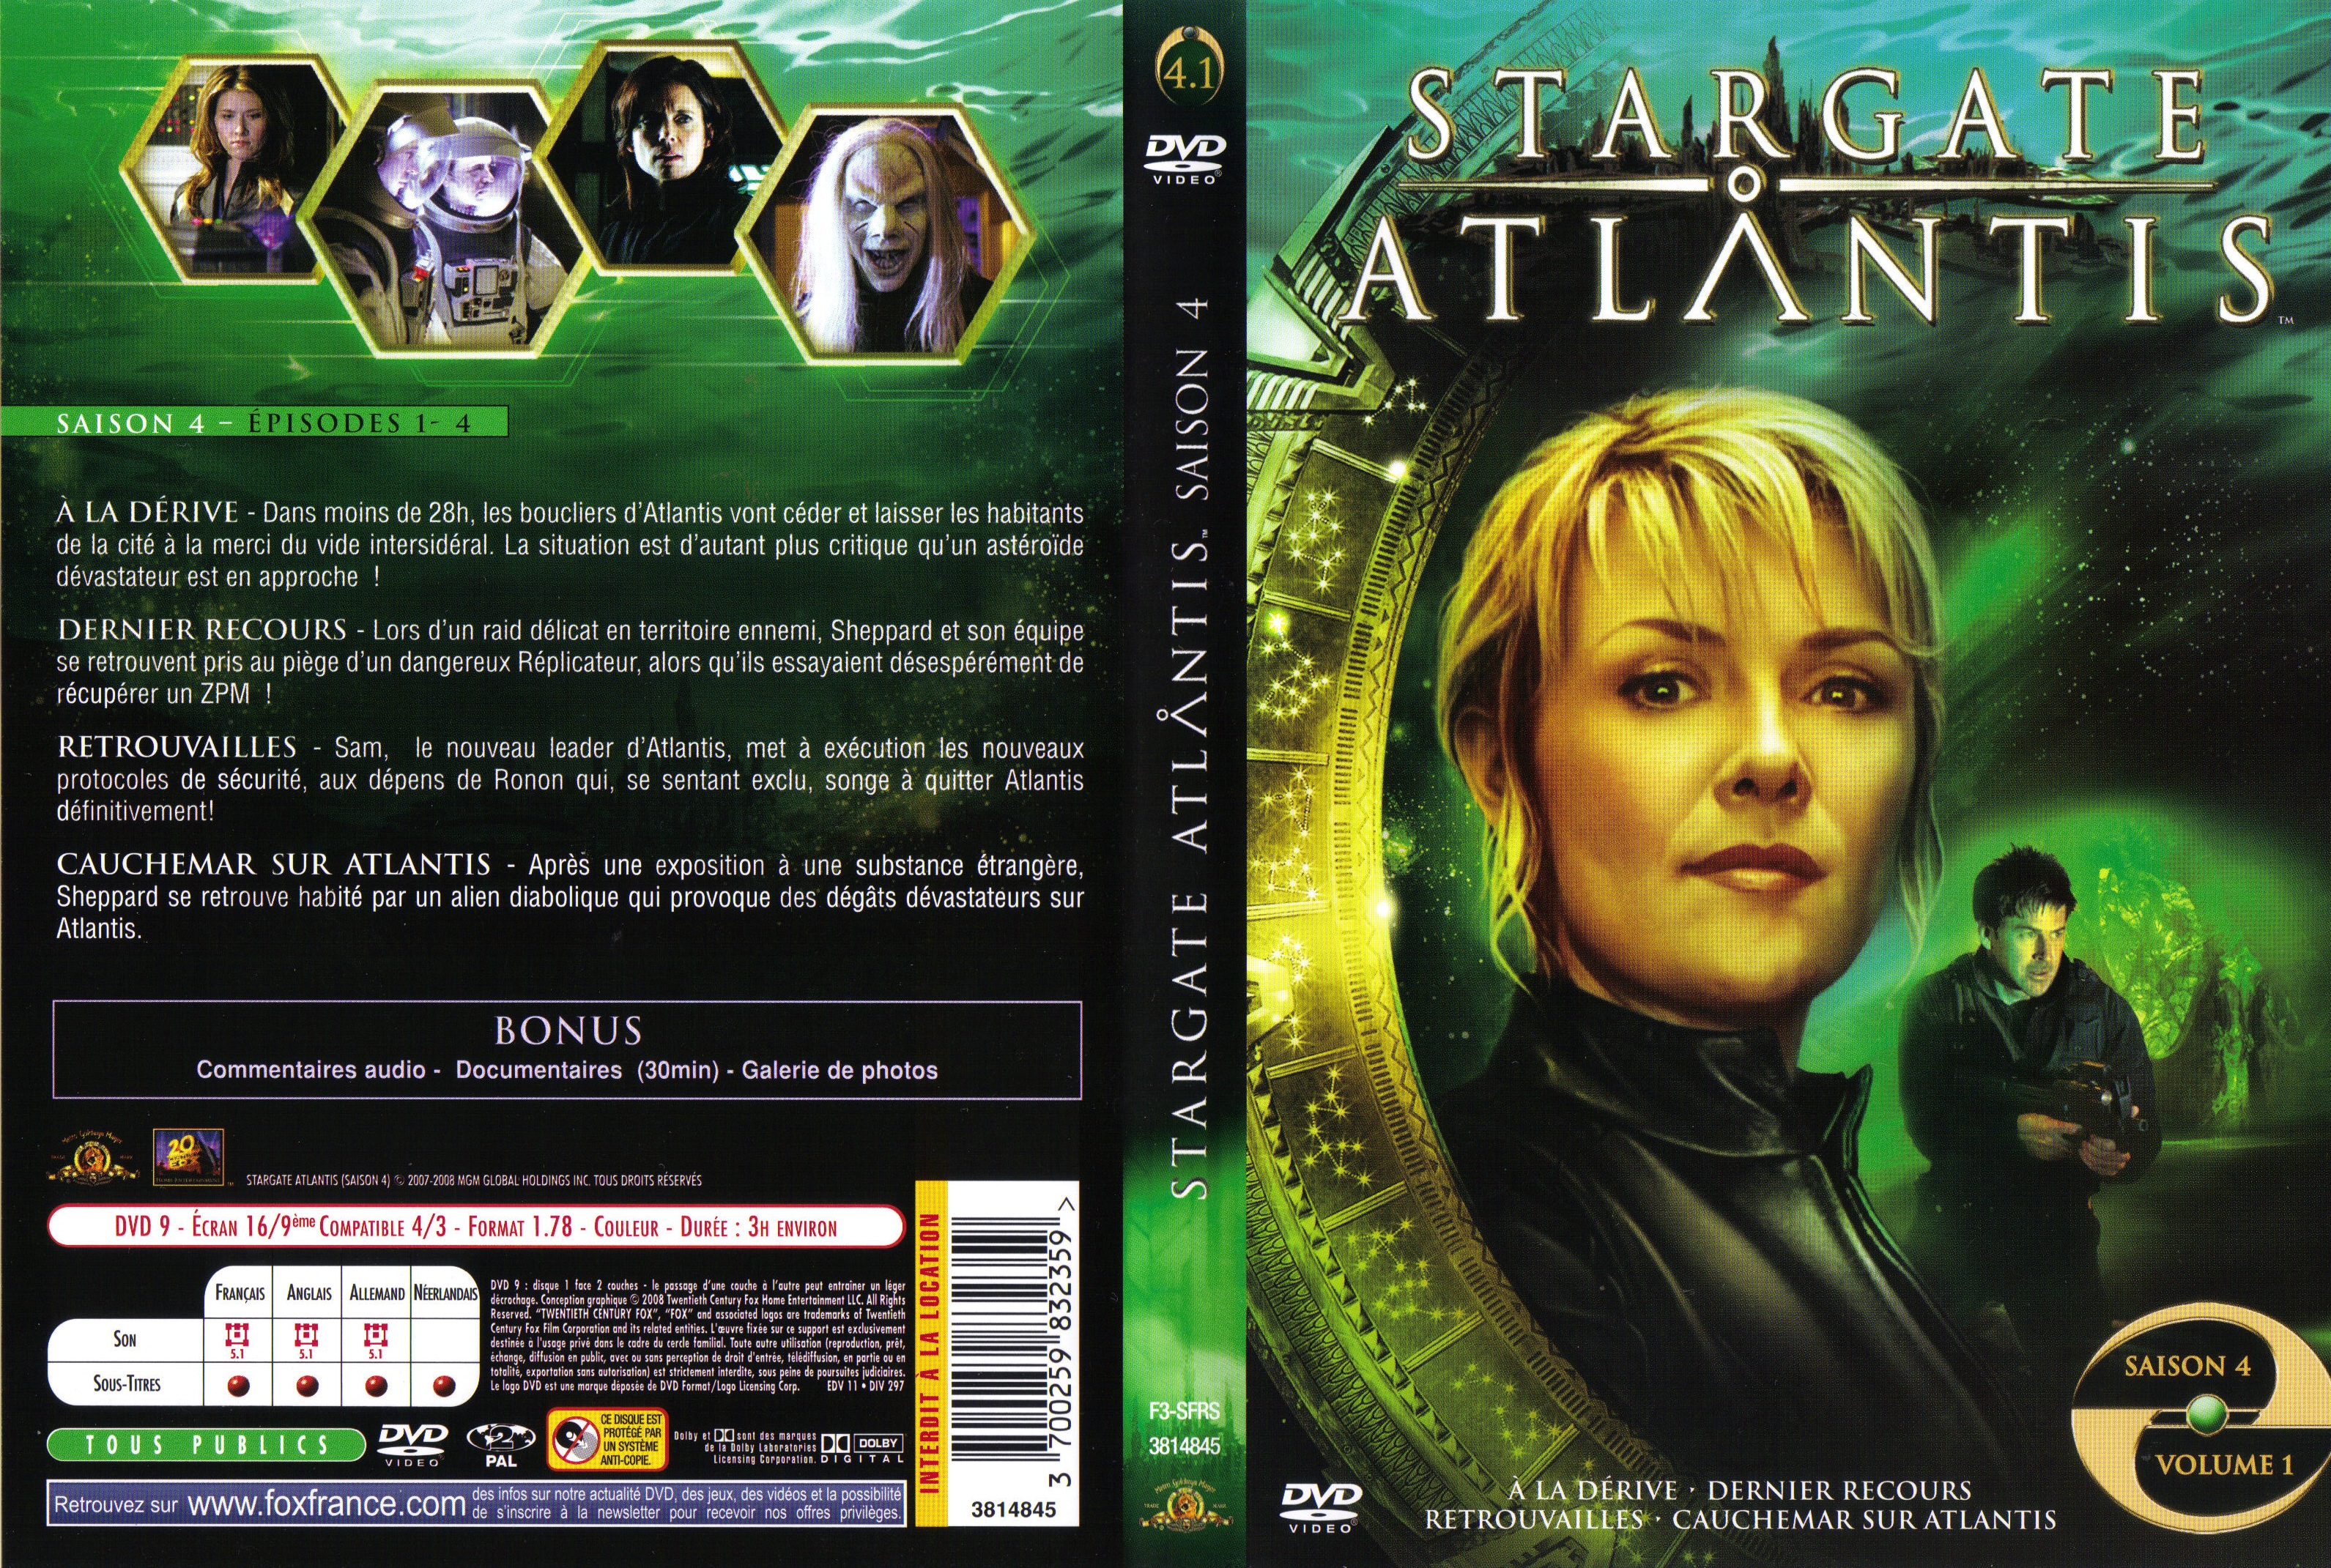 Jaquette DVD Stargate Atlantis Saison 4 vol 1